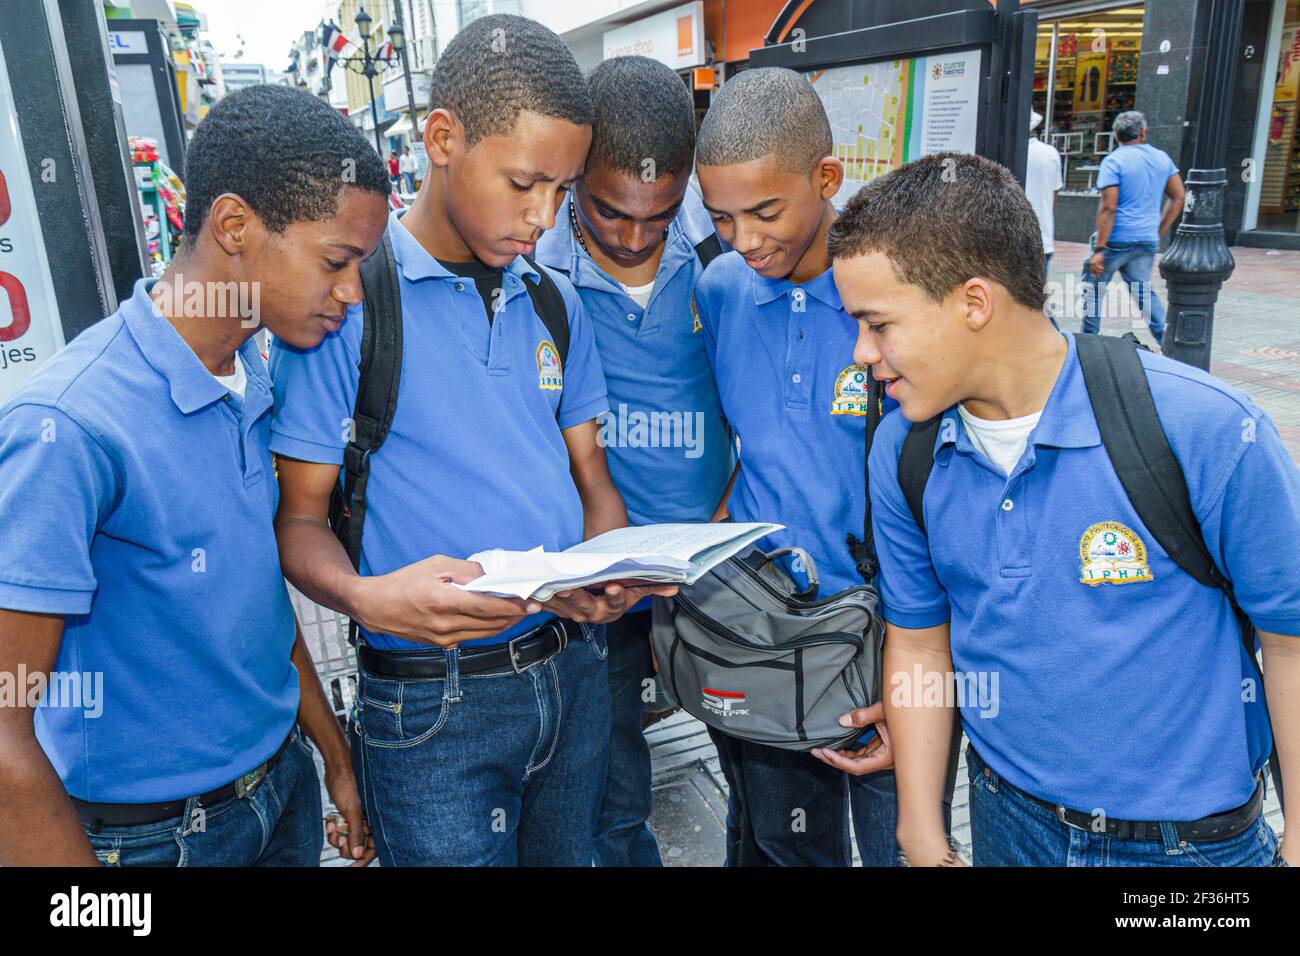 Santo Domingo Dominican Republic,Ciudad Colonial Calle el Conde Peatonal,Black Hispanic students boys teens teenagers reading book,wearing school unif Stock Photo